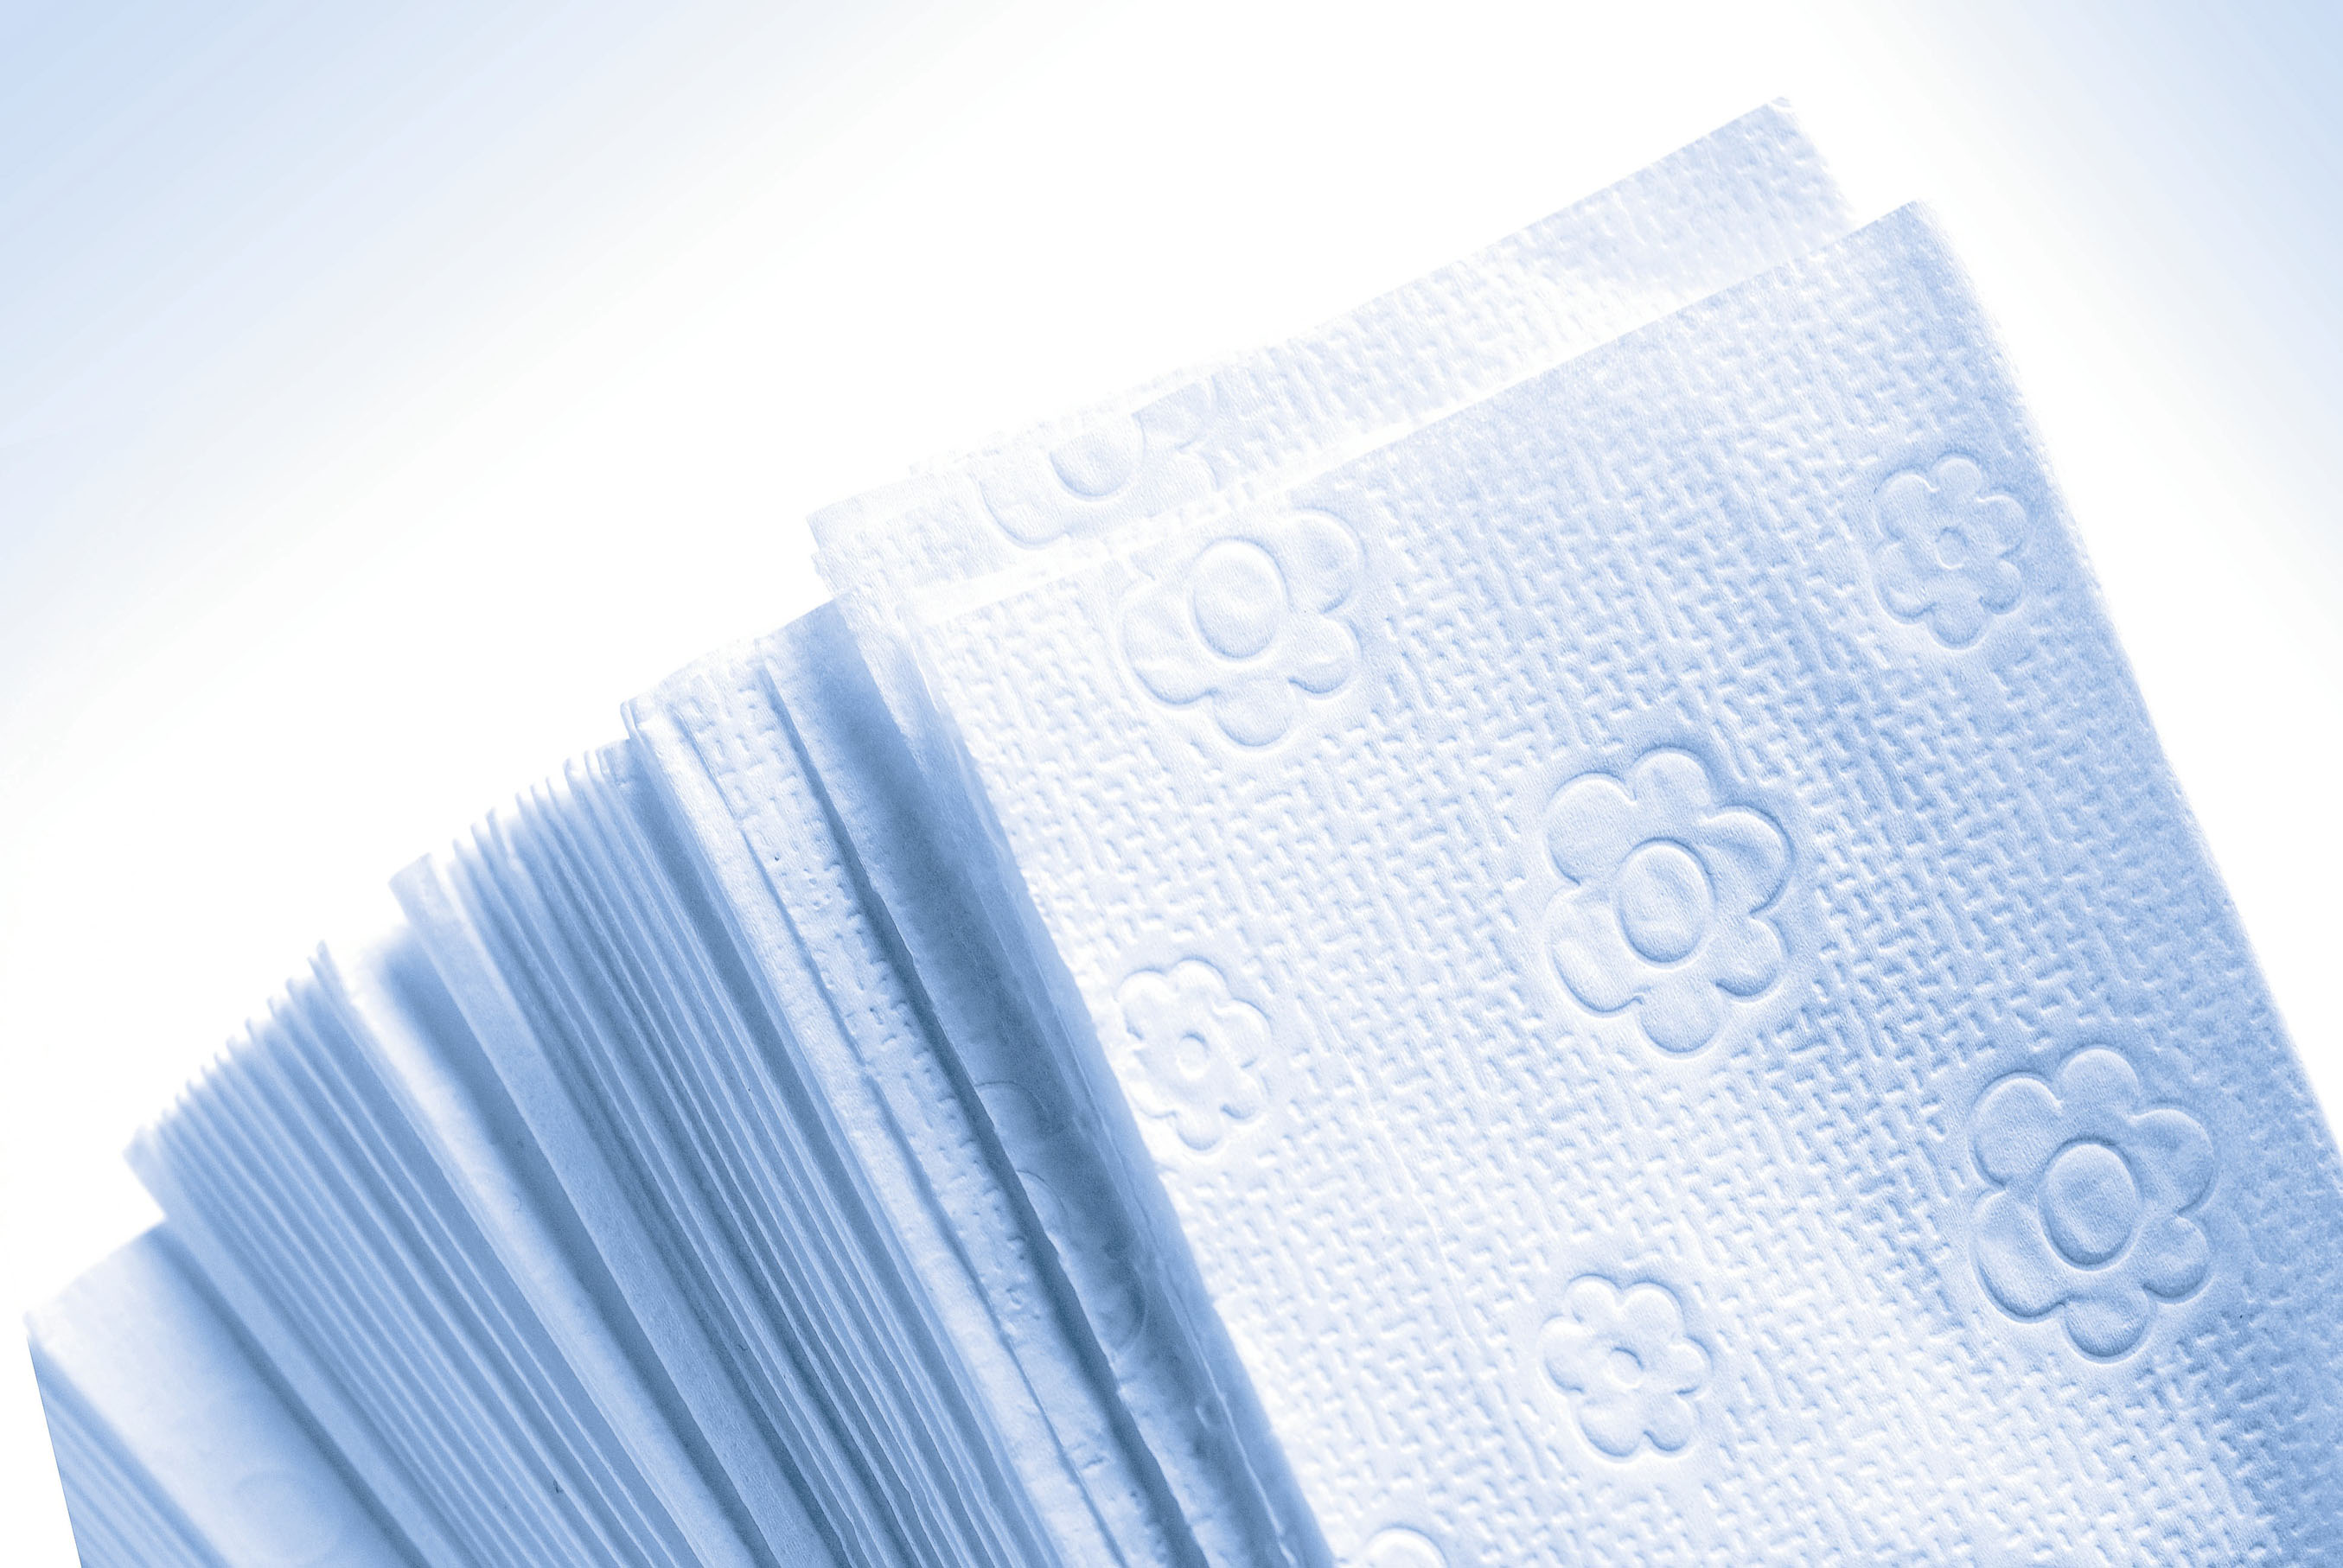 Fripa - Papierhandtücher Comfort Tissue, 2-lagig 25 x 23 cm (20 x 160 Stck.), hochweiss